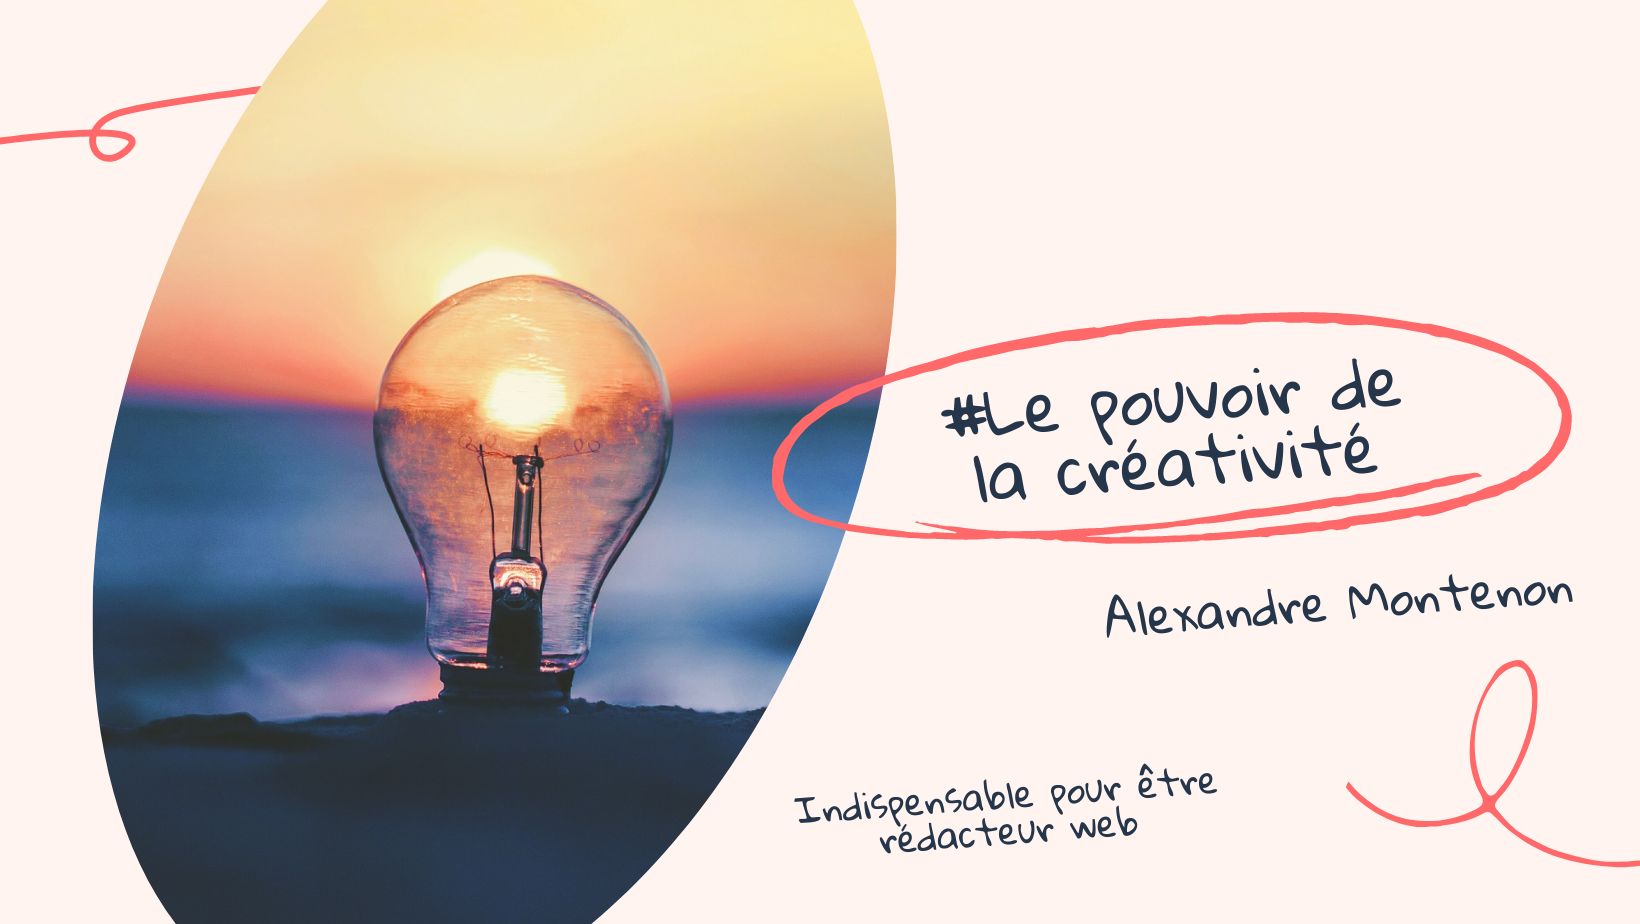 Être créatif pour devenir rédacteur web | Alexandre Montenon